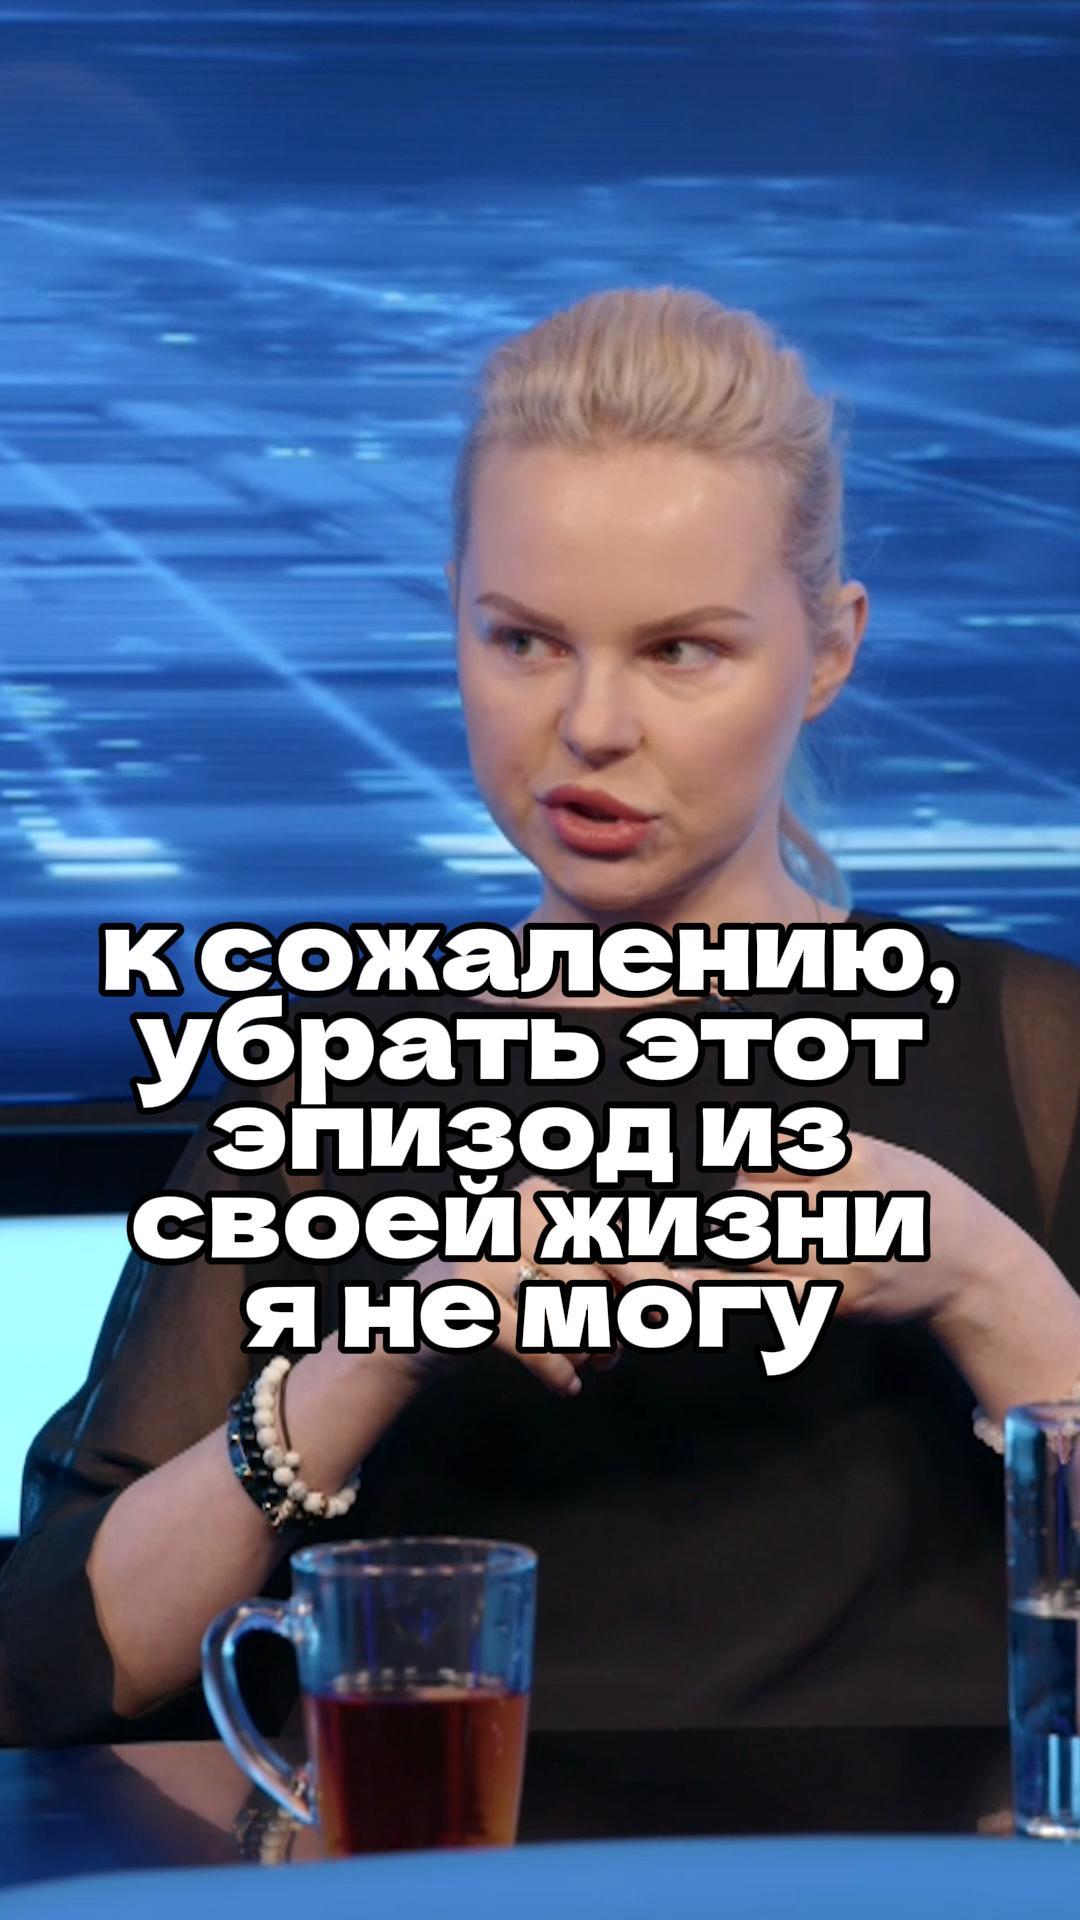 Алиса Вокс в интервью Ломовка Live / О выступлении без одежды #интервью #ленинград #алисавокс